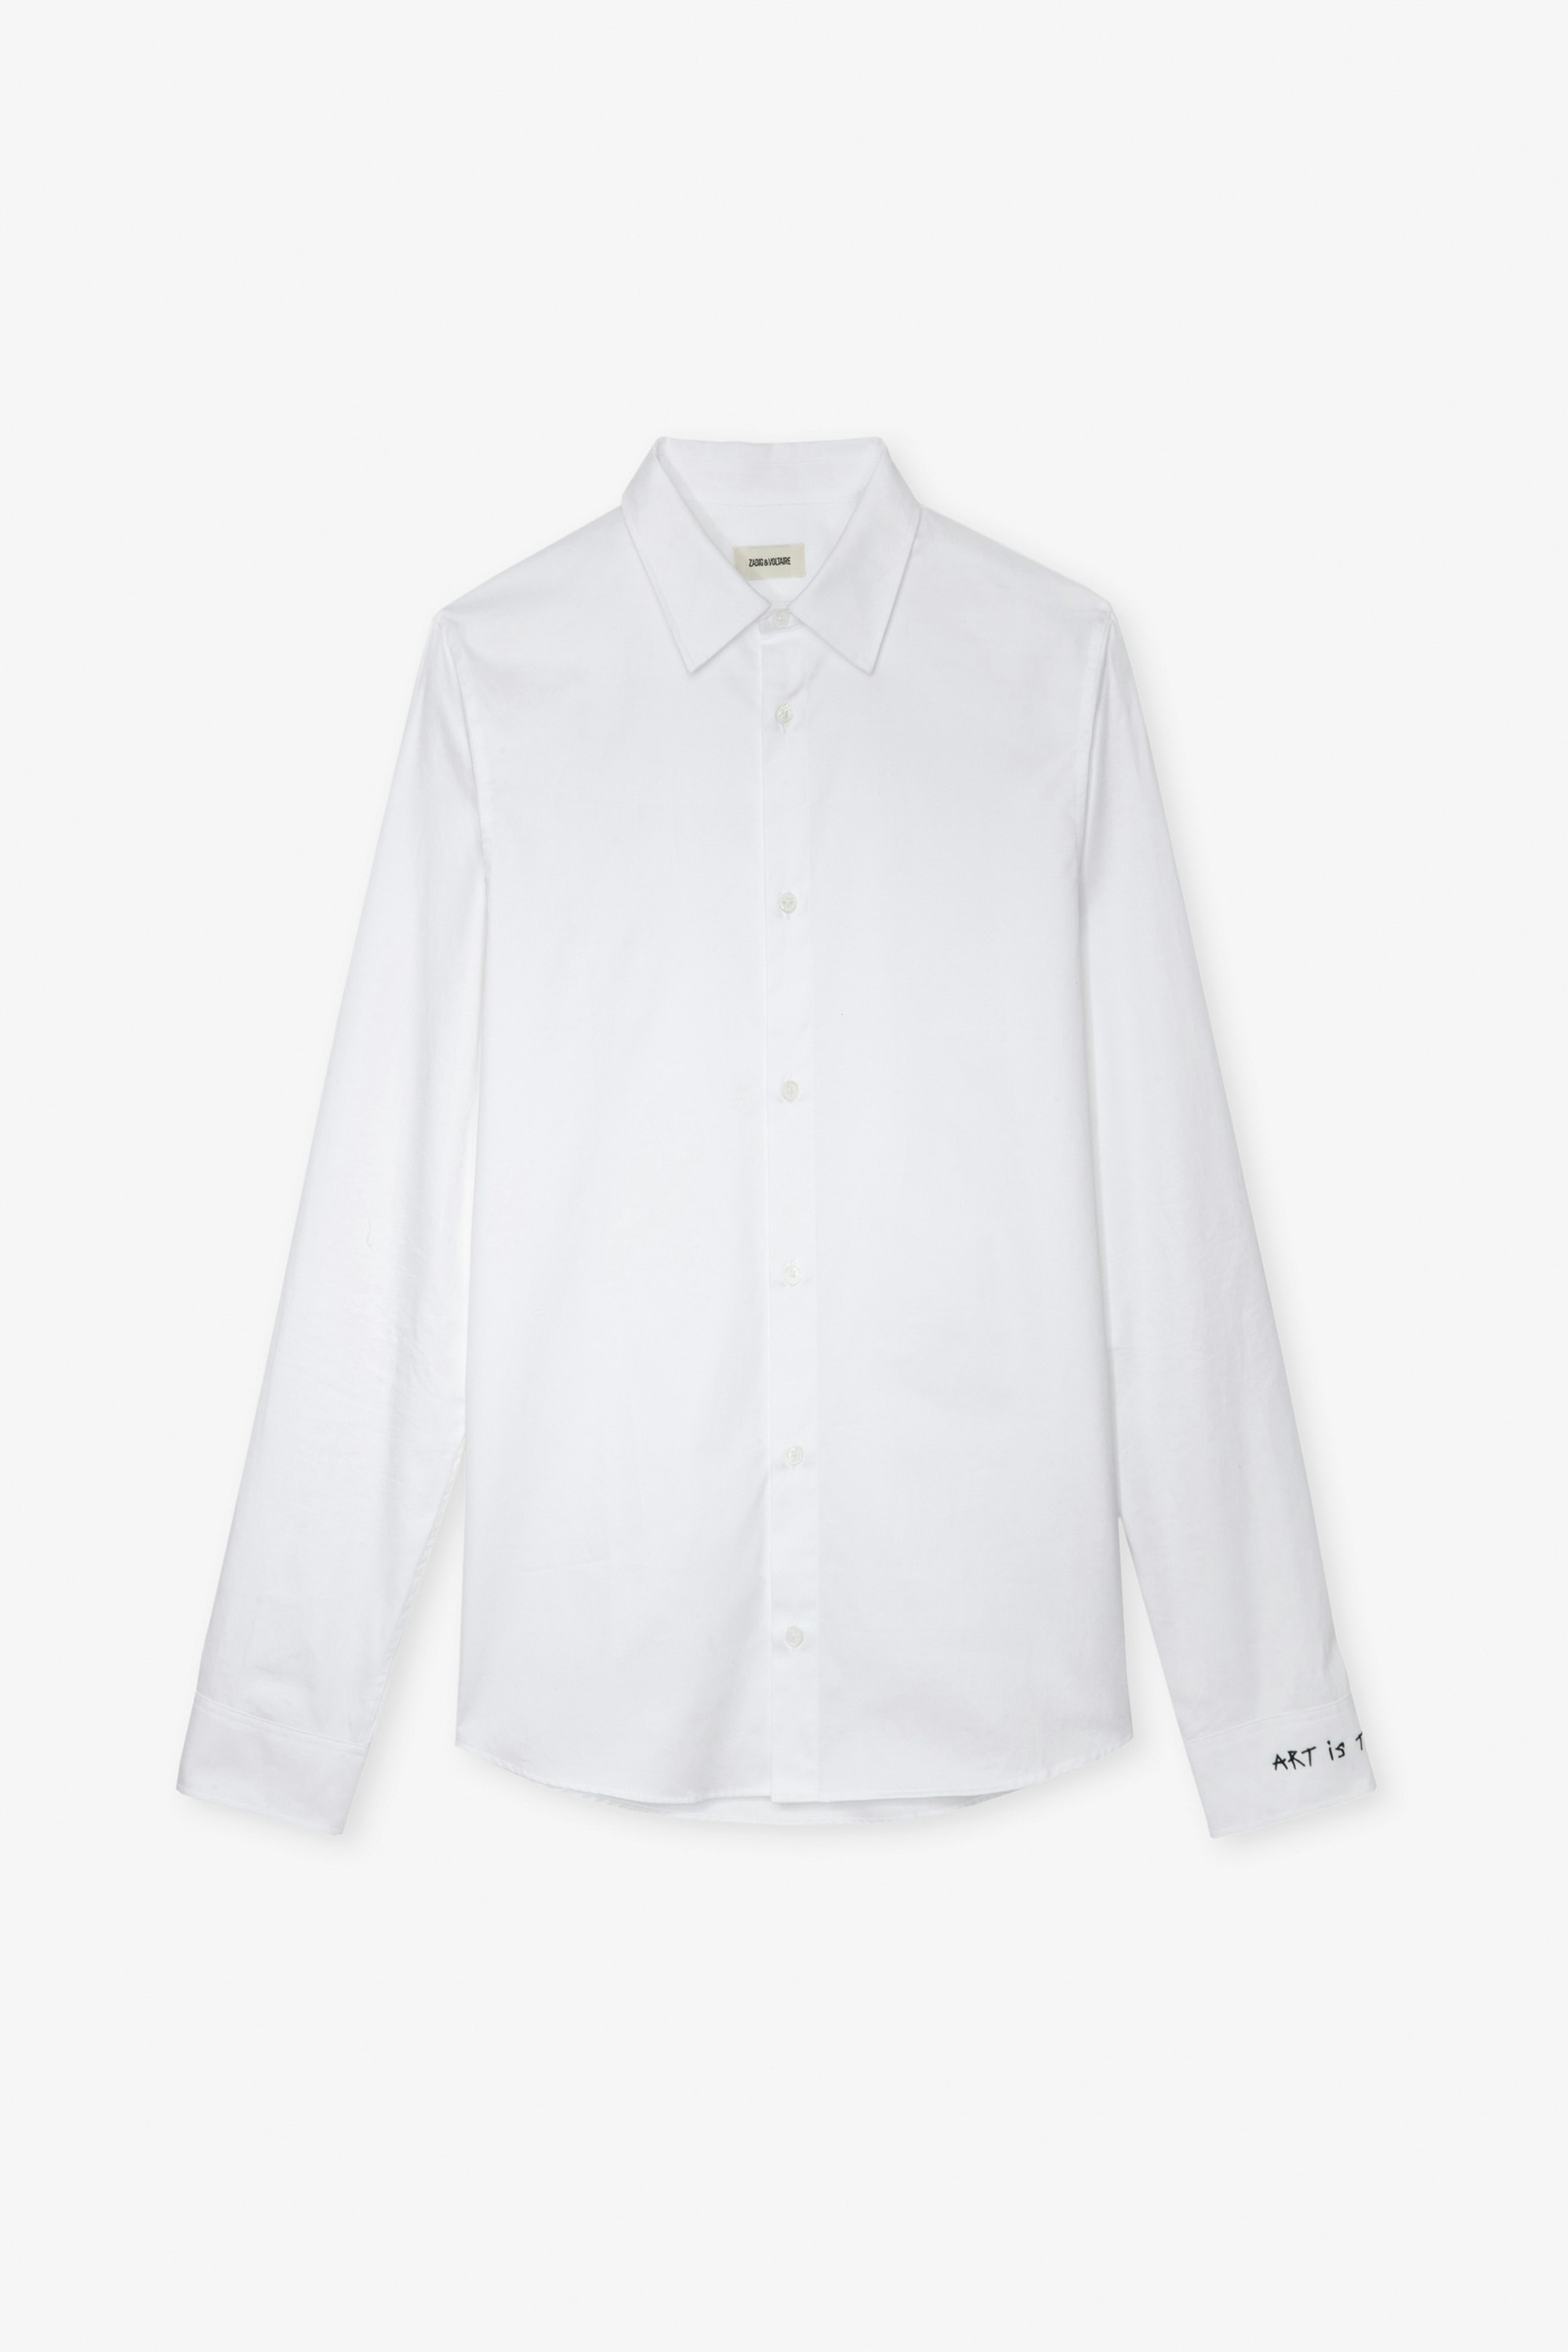 Camicia Sydney - Camicia unisex in cotone bianco decorata con ricamo "Art Is Truth" sul polsino destro.